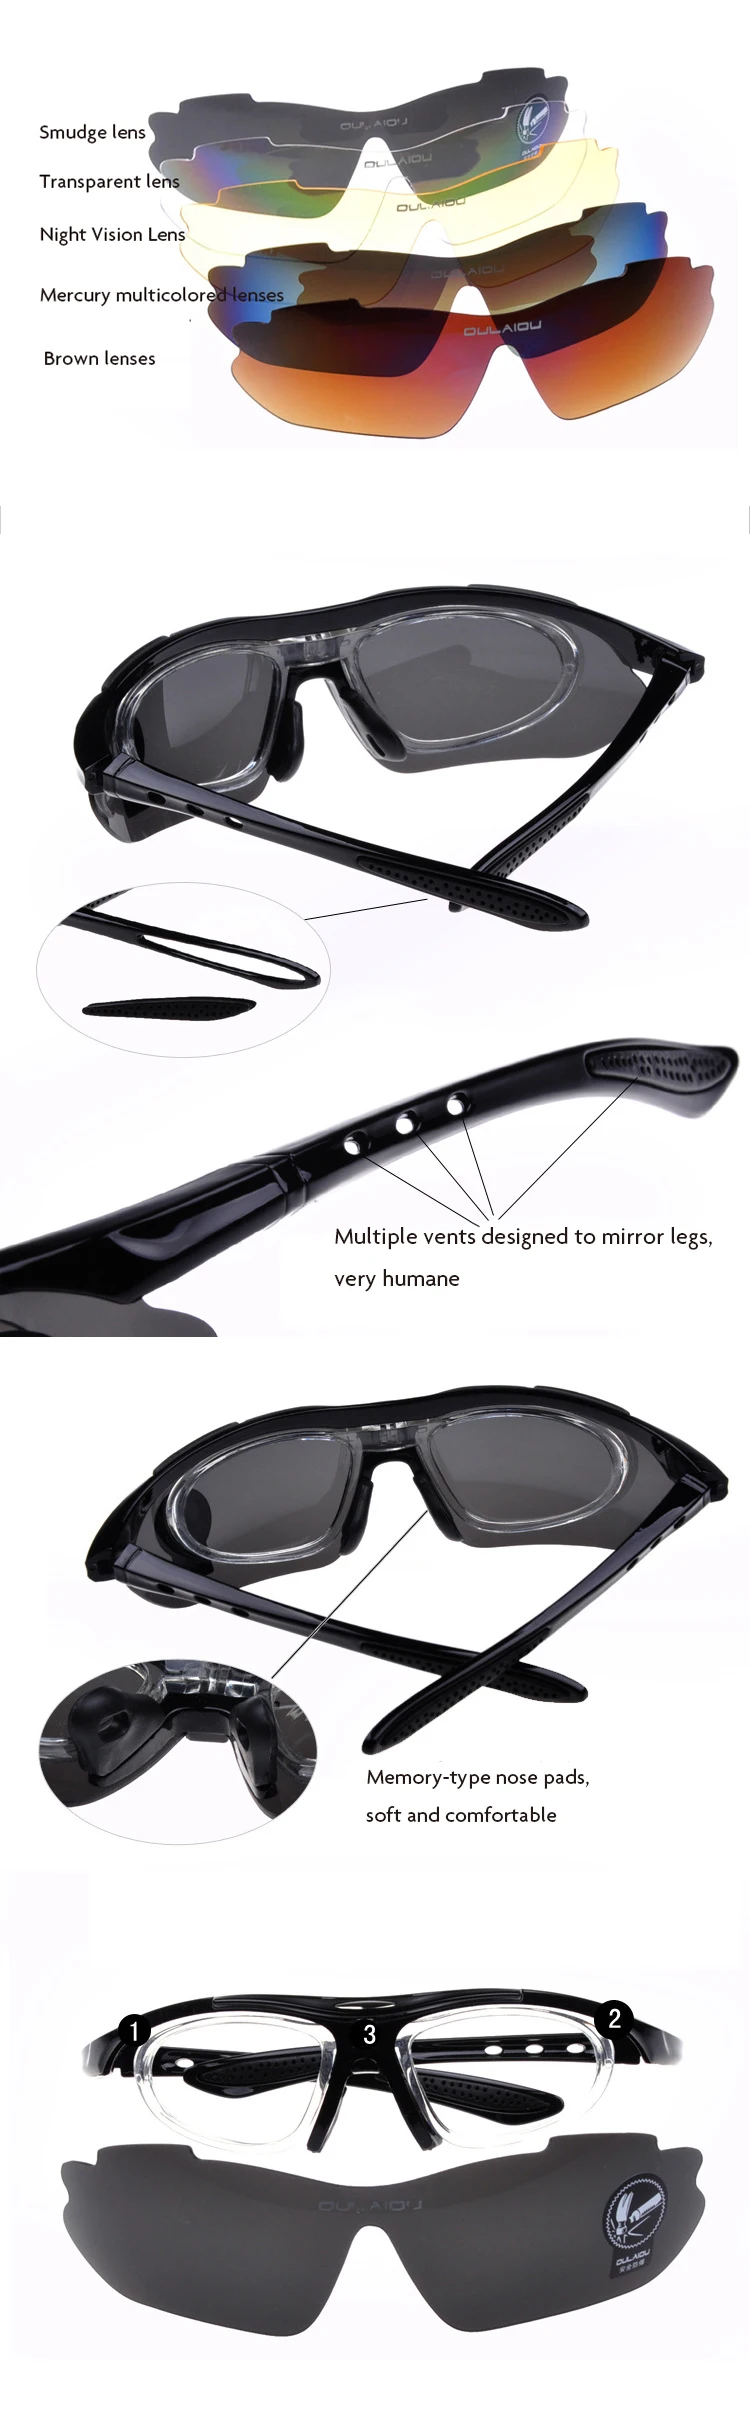 MASCUBE UV400 Защитные очки для альпинизма, пешего туризма, тактические очки, спортивные защитные очки для охоты, 5 линз oculos feminino